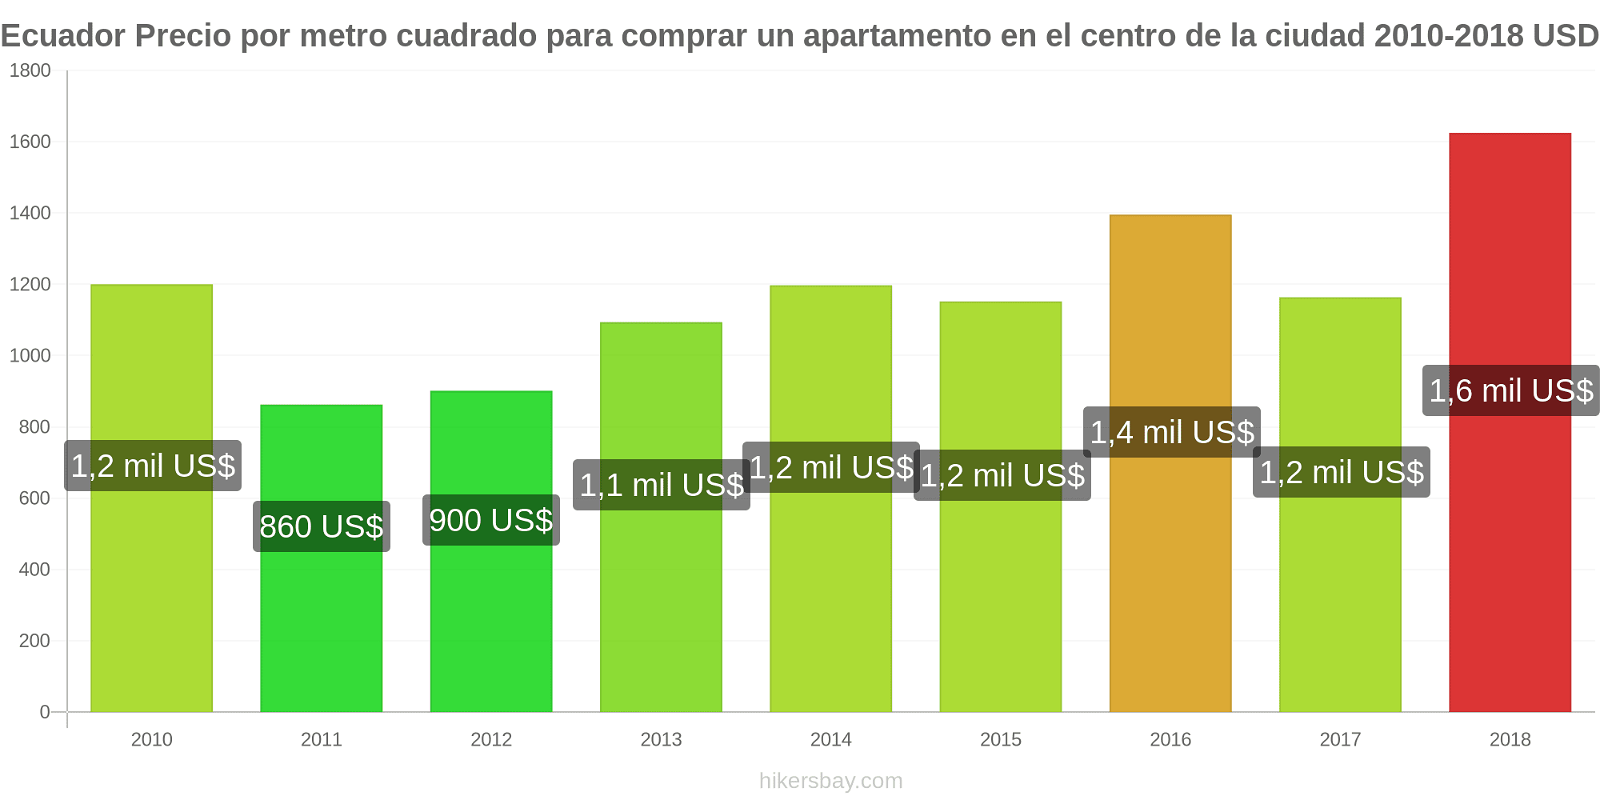 Ecuador cambios de precios Precio por metro cuadrado de un apartamento en el centro de la ciudad hikersbay.com